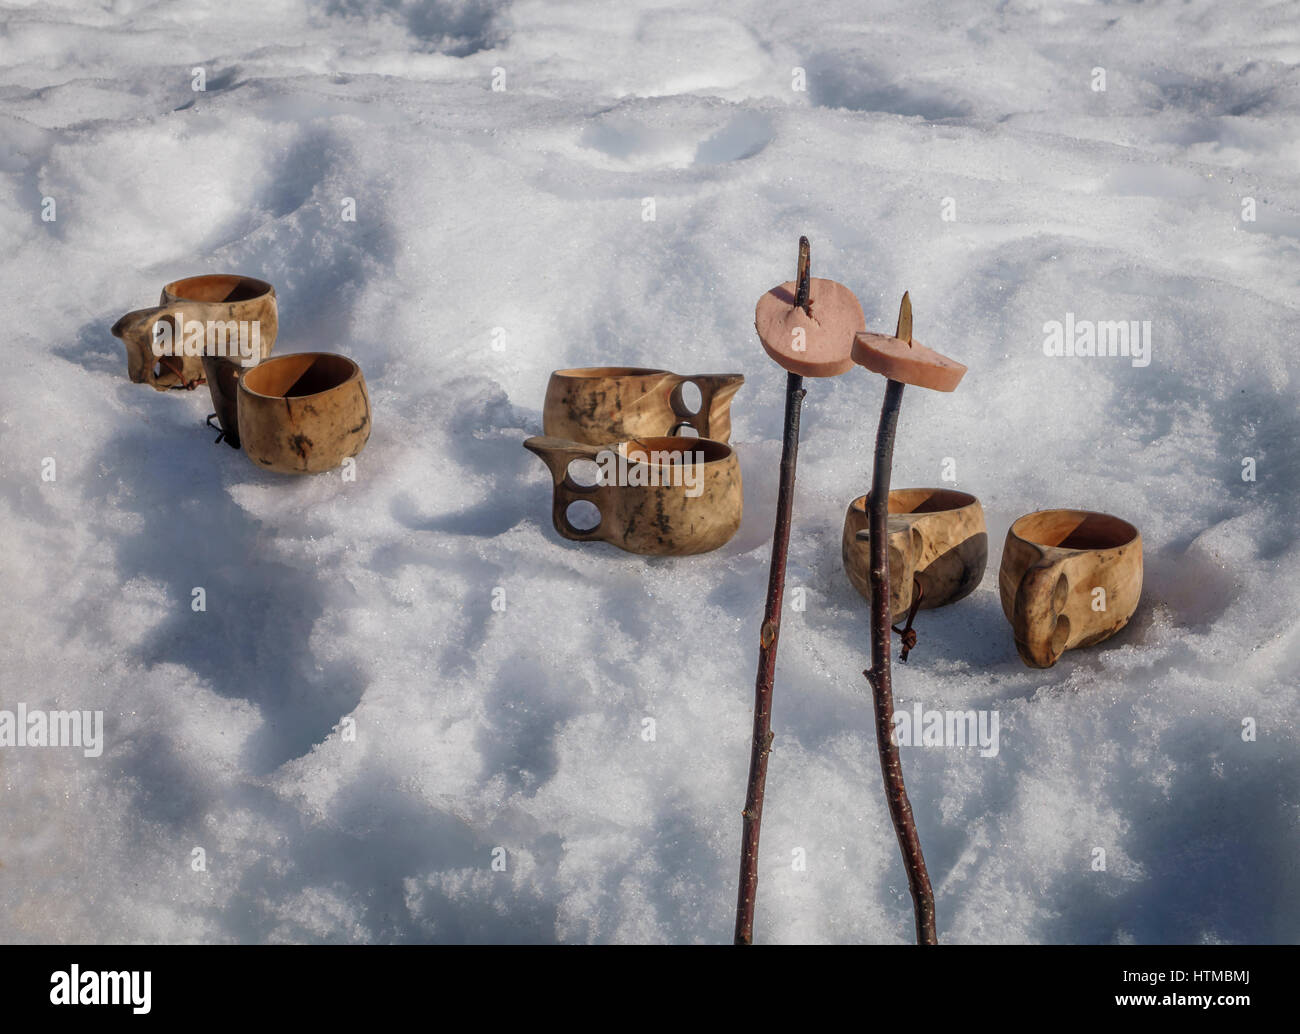 Im Freien serviert traditionelle Rentier-Wurst mit einem heißen Getränk in Handarbeit aus Holz Schalen, Lappland Gästehaus in Kangos, Lappland, Schweden Stockfoto